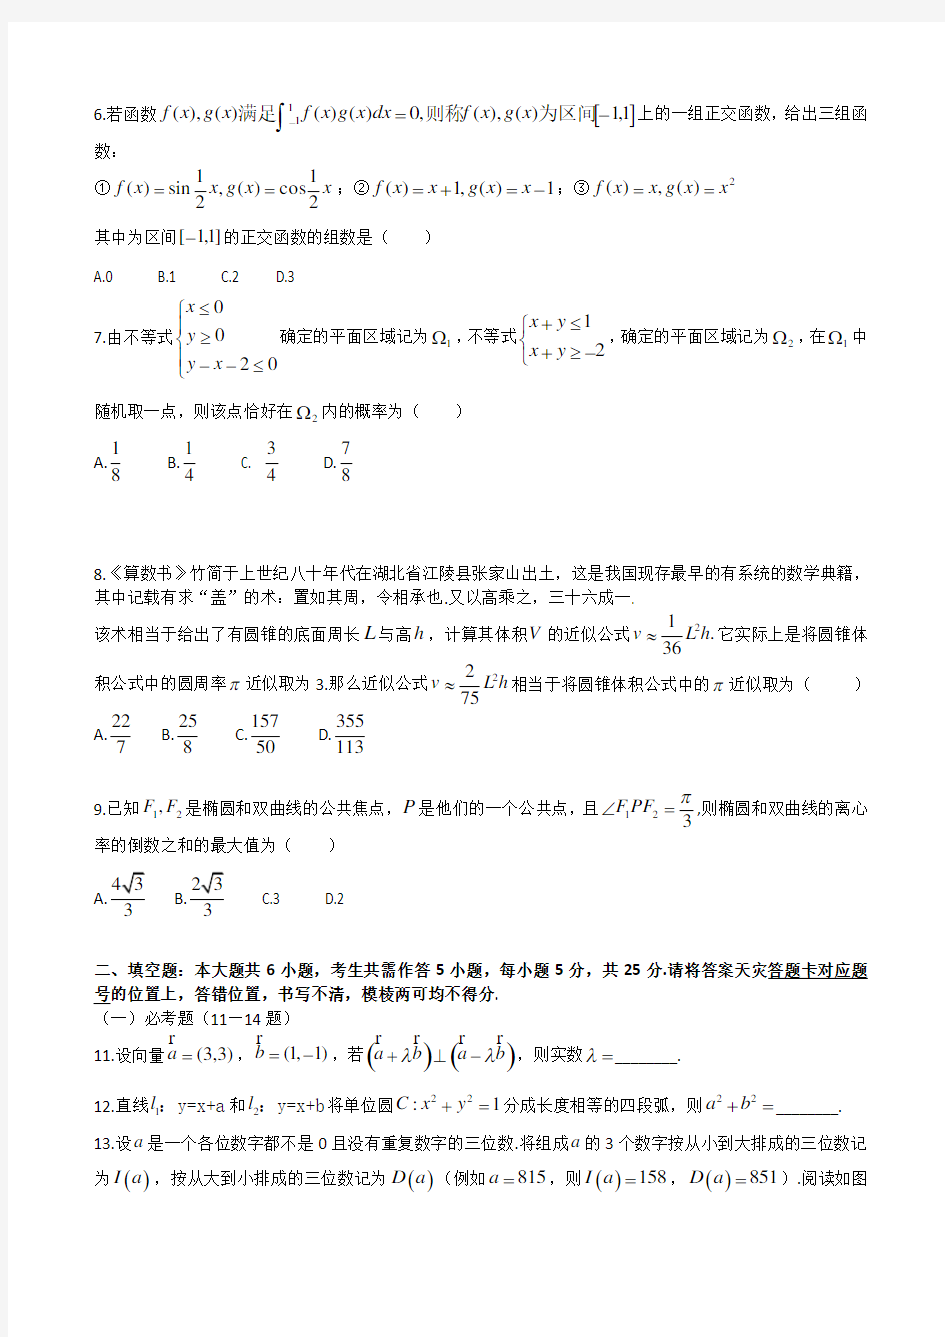 2014年高考试题：理科数学(湖北卷)_中小学教育网